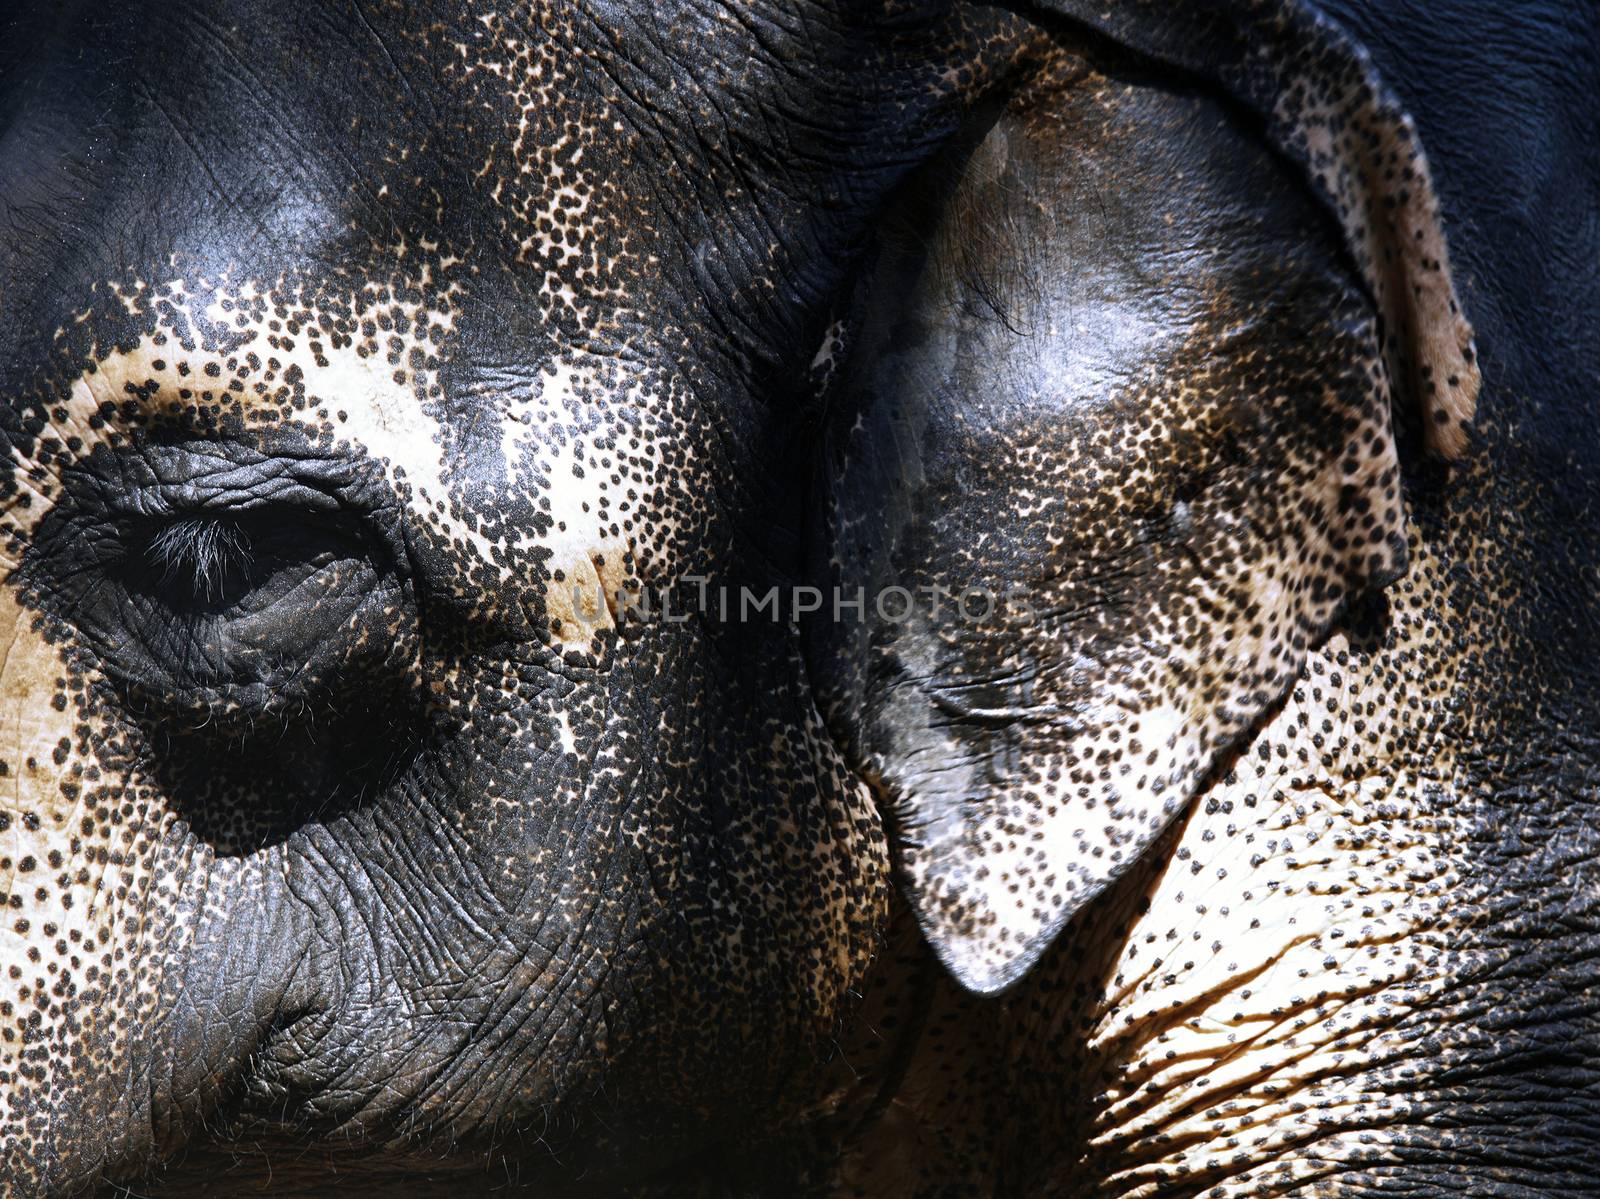 Indian Elephant by Novic